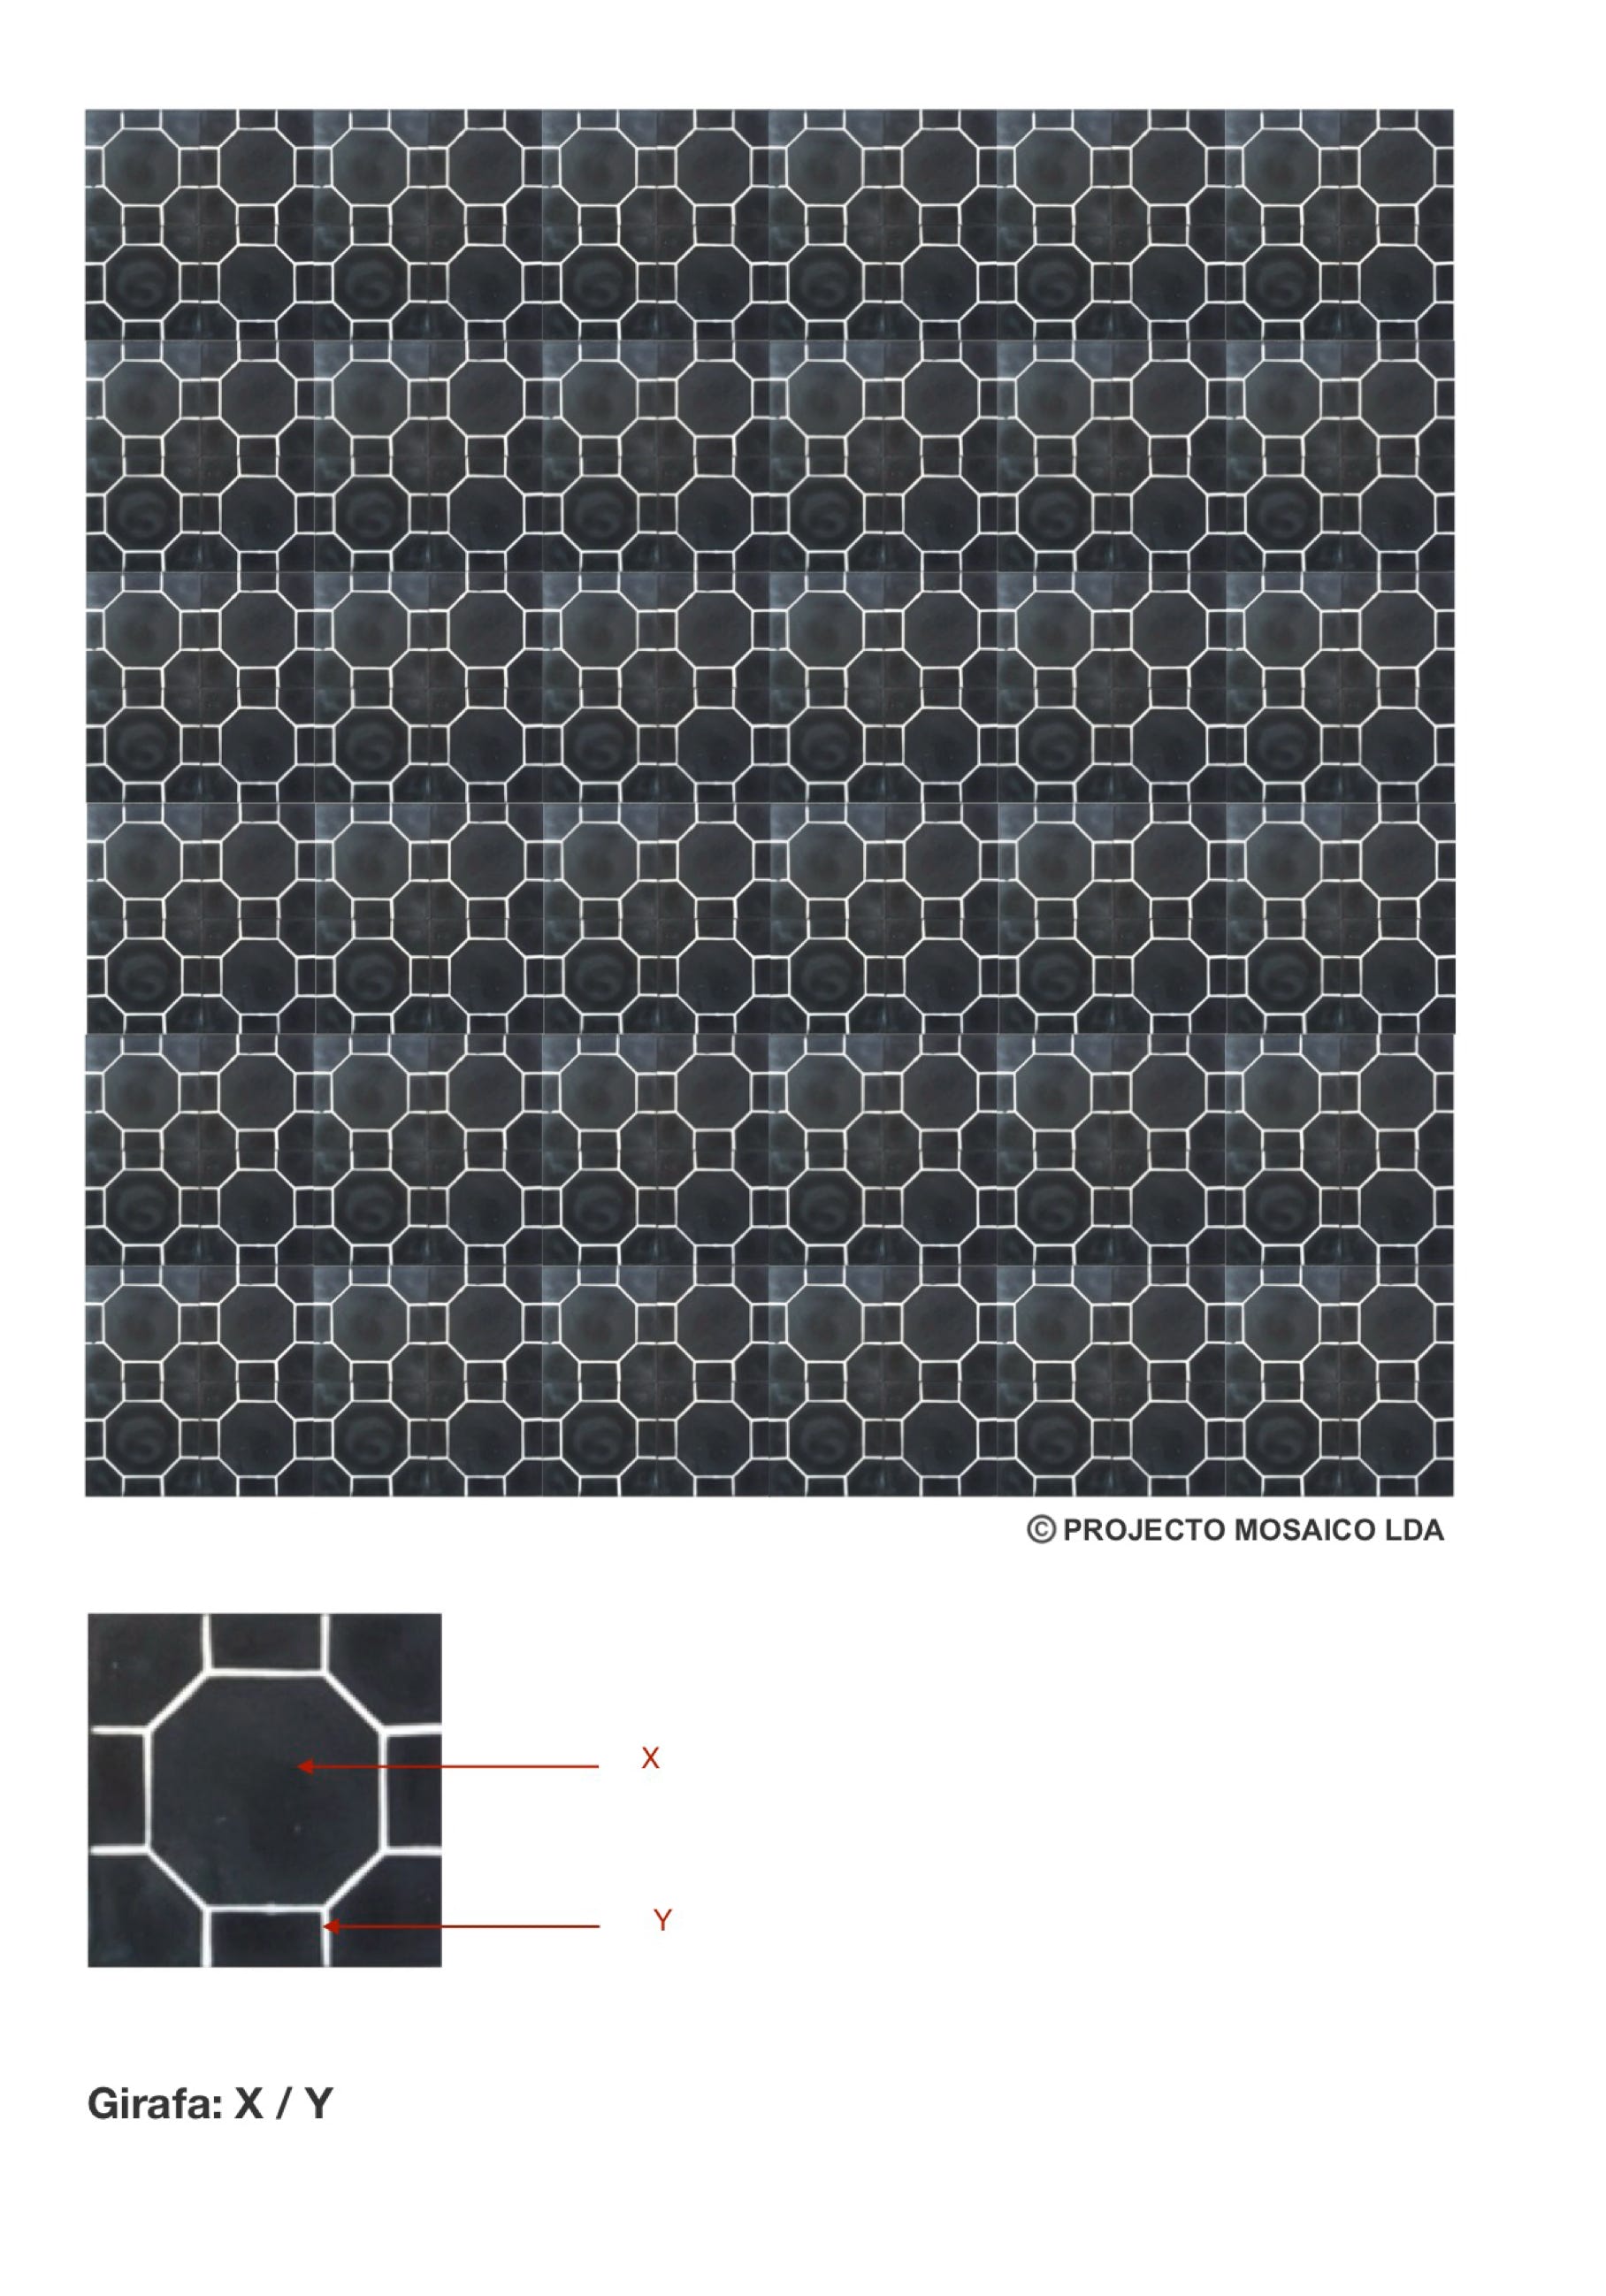 illustração de aplicação do mosaico hidráulico ref: Girafa